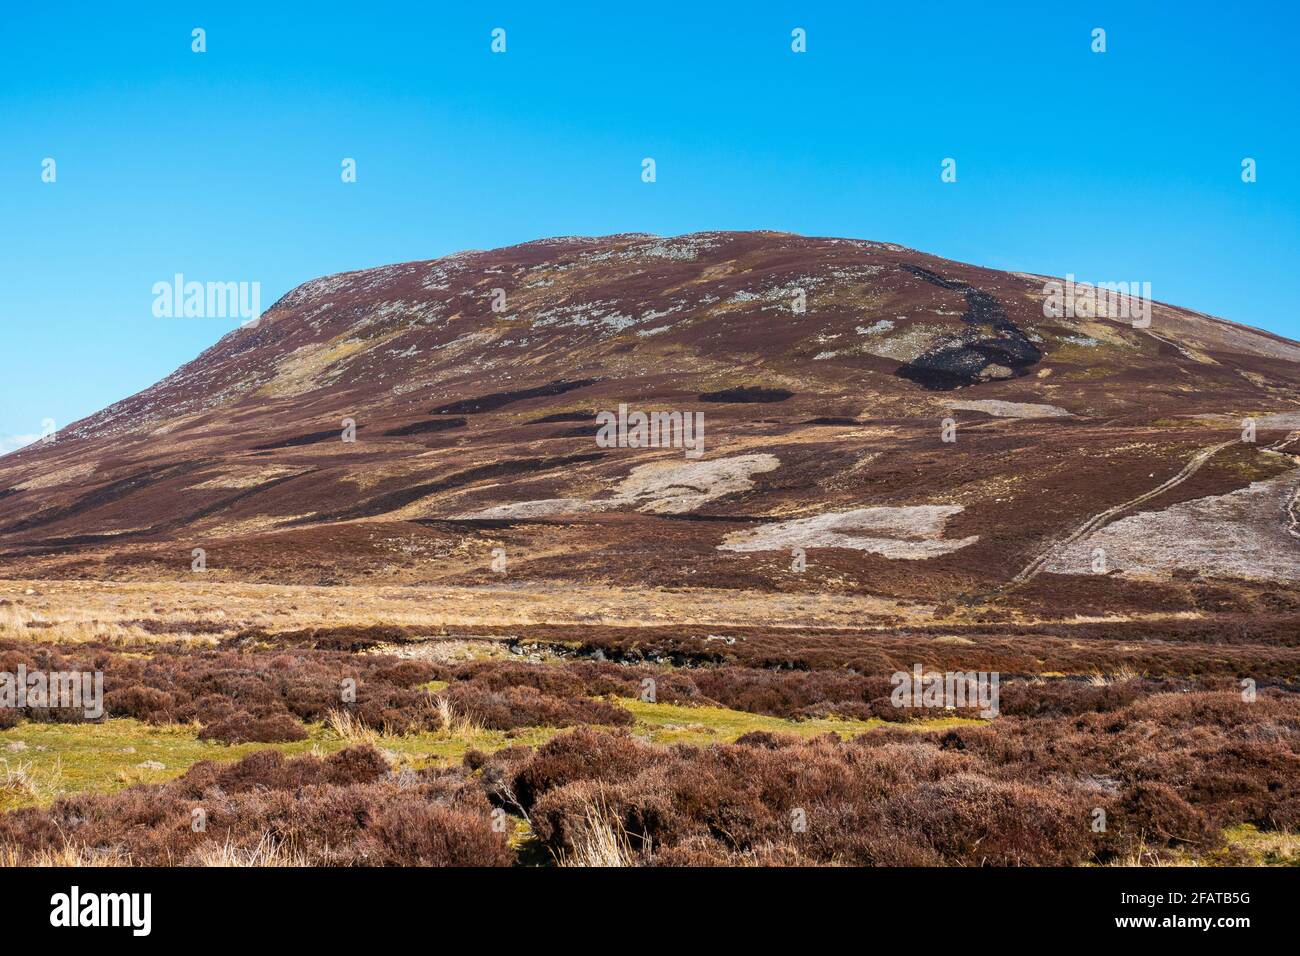 Meall Chuaich, a Munro mountain near Dalwhinnie, Scotland Stock Photo